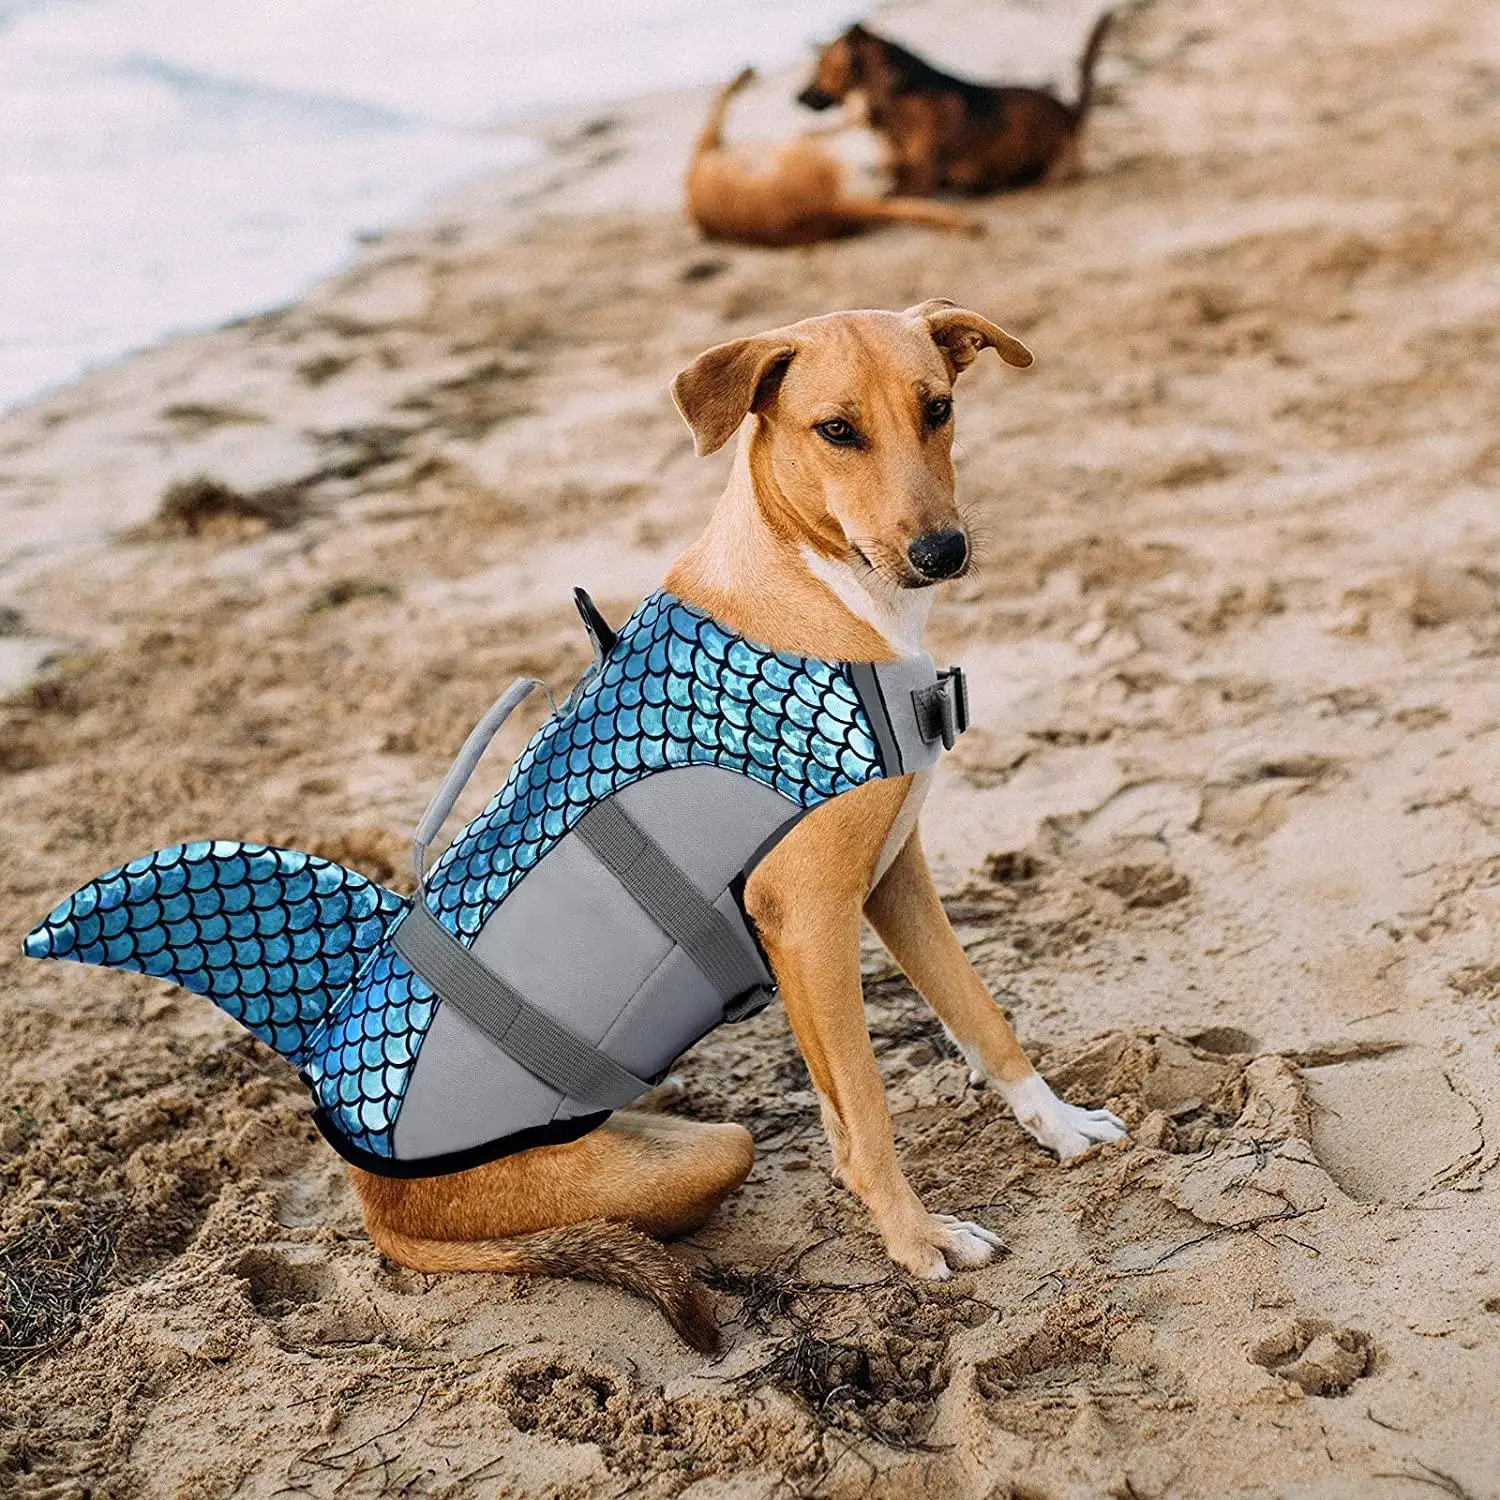 Veste de sauvetage pour chiens, gilet réfléchissant, camouflage pour animaux domestiques, maillot de bain requin, sauvetage doté d'une poignée de sauvetage Durable